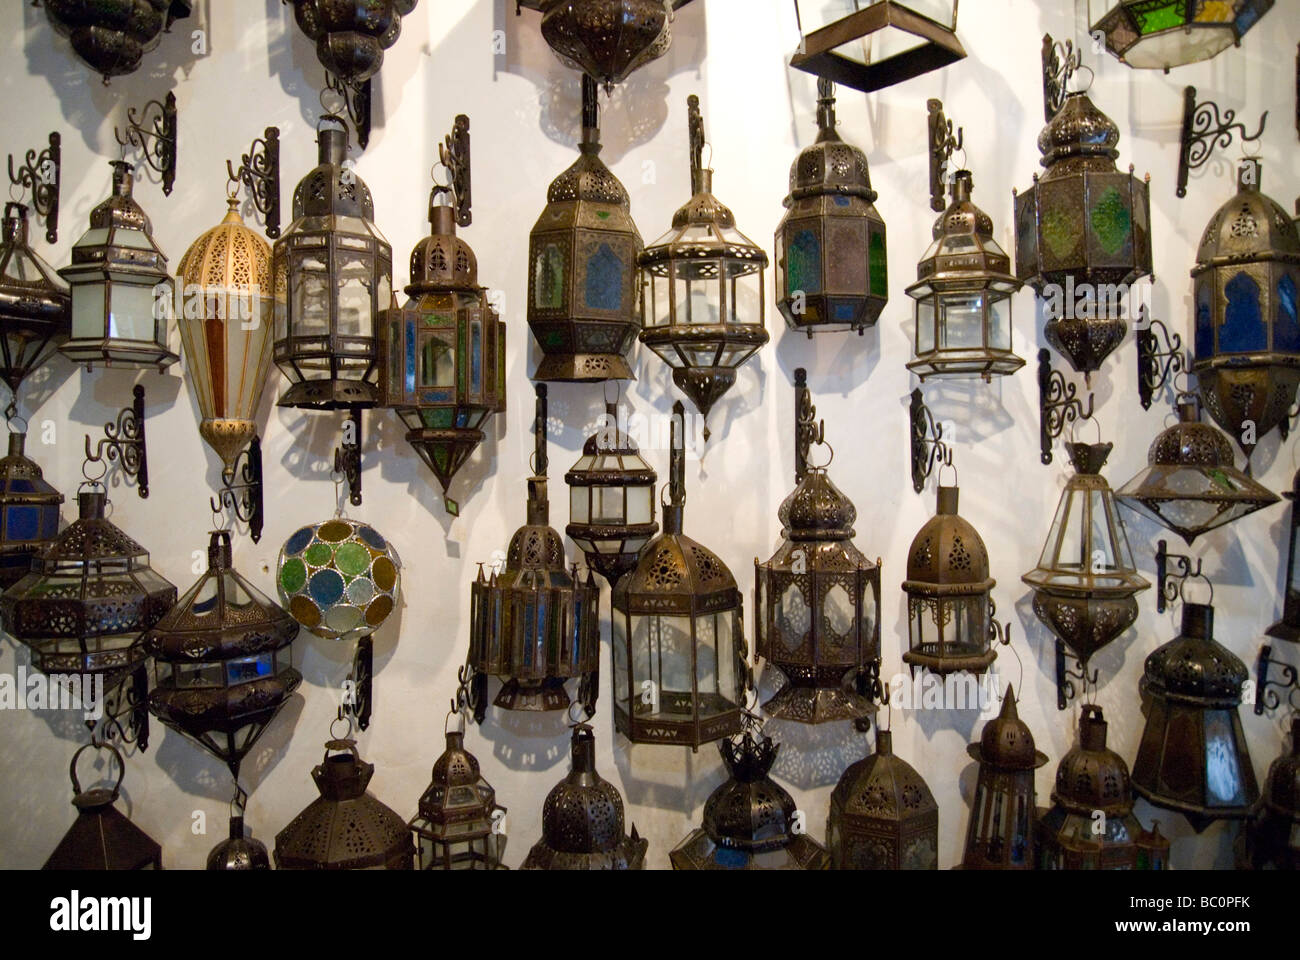 Lanternes ornent les murs d'une boutique à Marrakech Maroc Afrique du Nord Banque D'Images